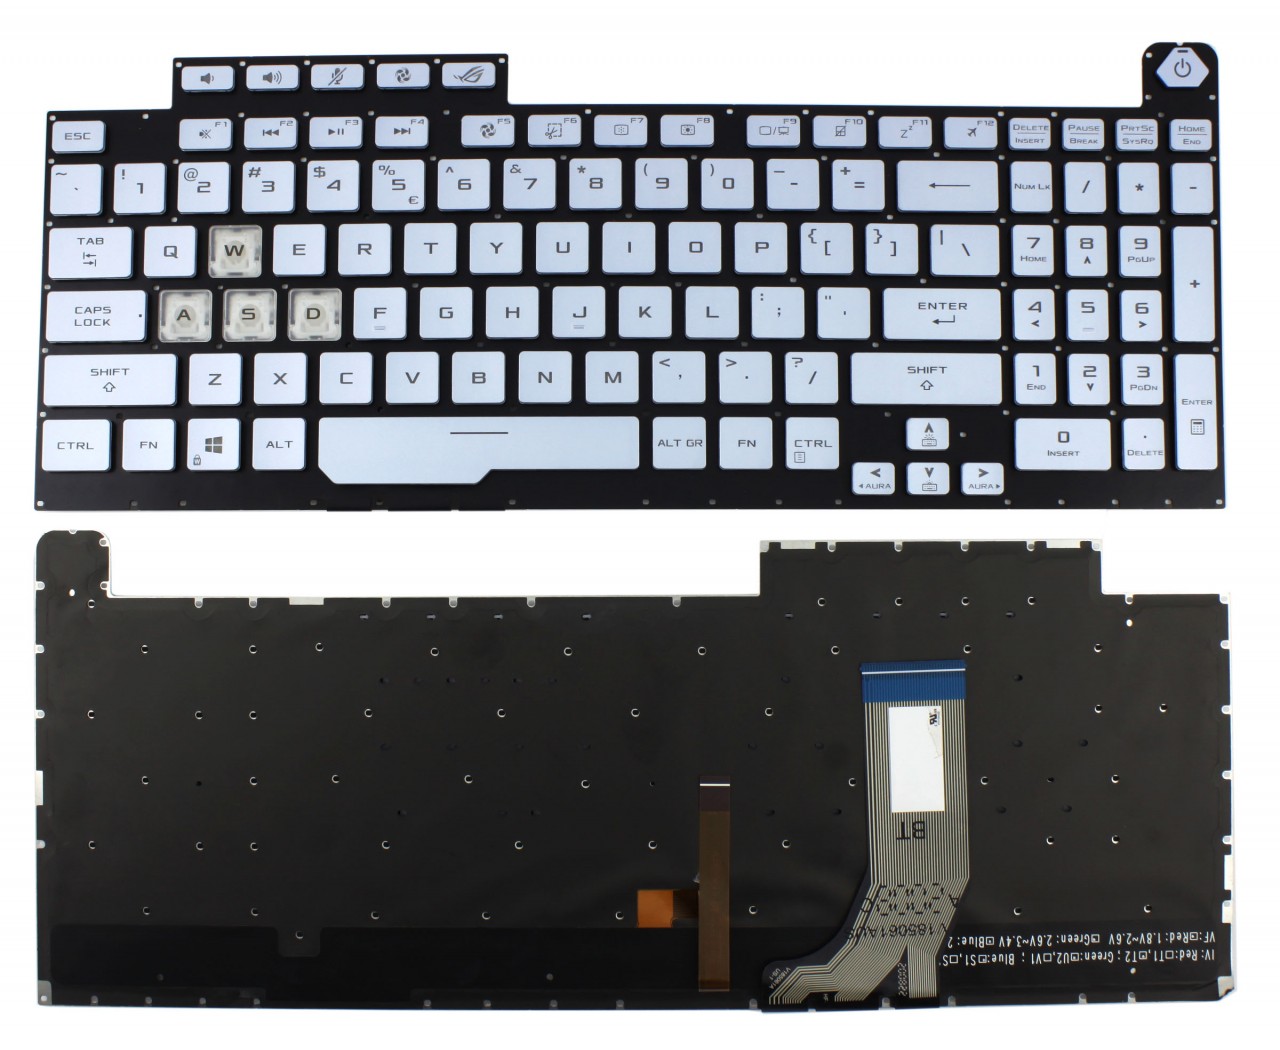 Tastatura Albastra Asus 0KNR0-6813US00 iluminata layout US fara rama enter mic image10